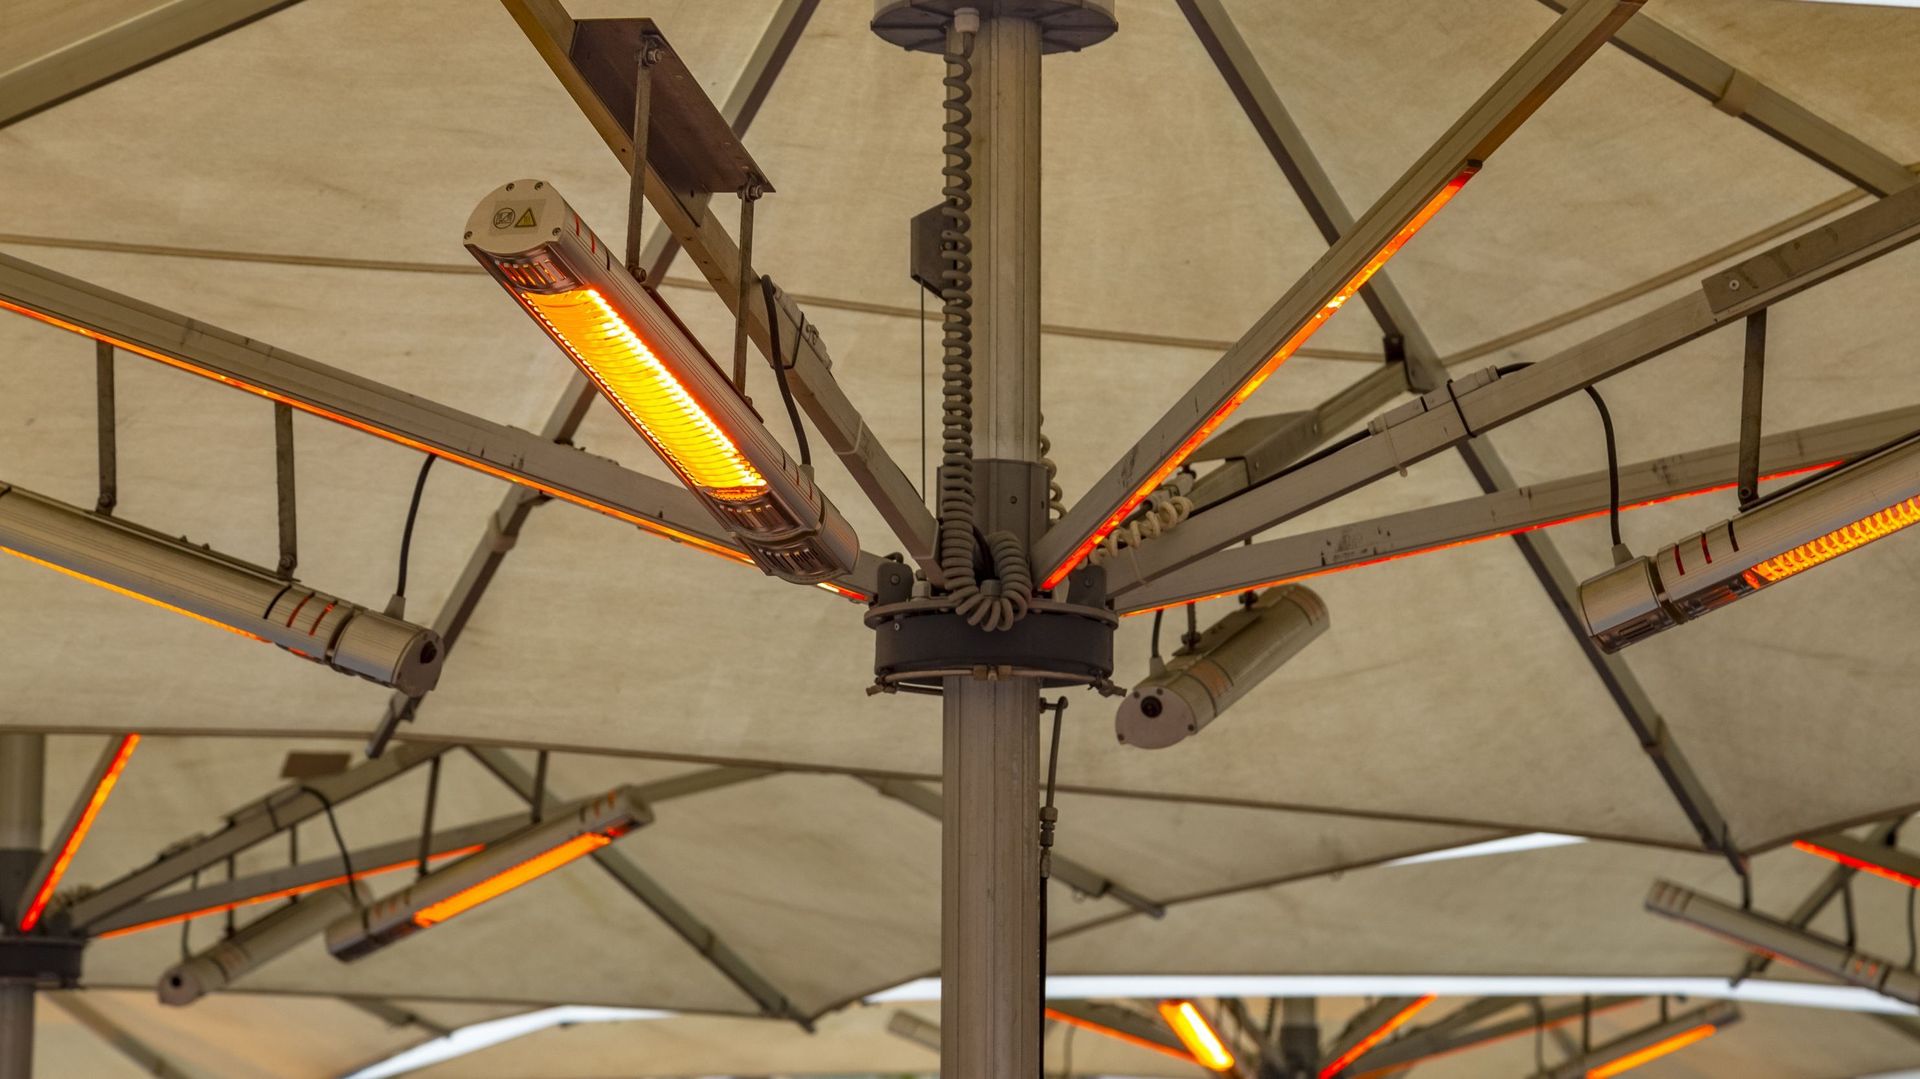 Lampes infrarouges électriques extérieures de chauffage sous parapluie à une terrasse de café en hiver.